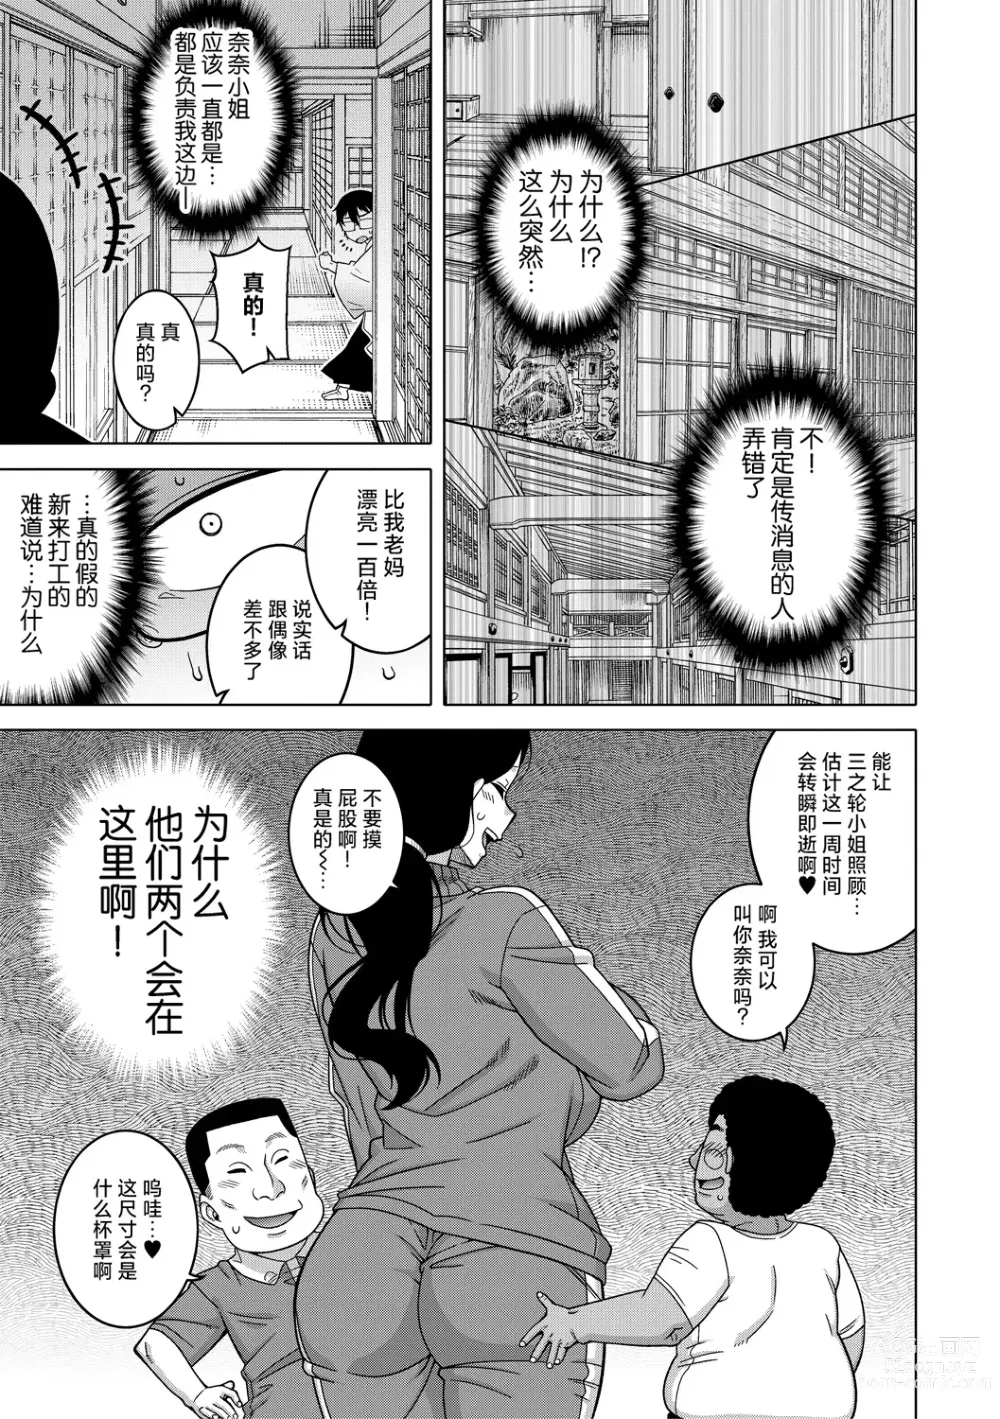 Page 28 of manga Kami-sama no Tsukurikata